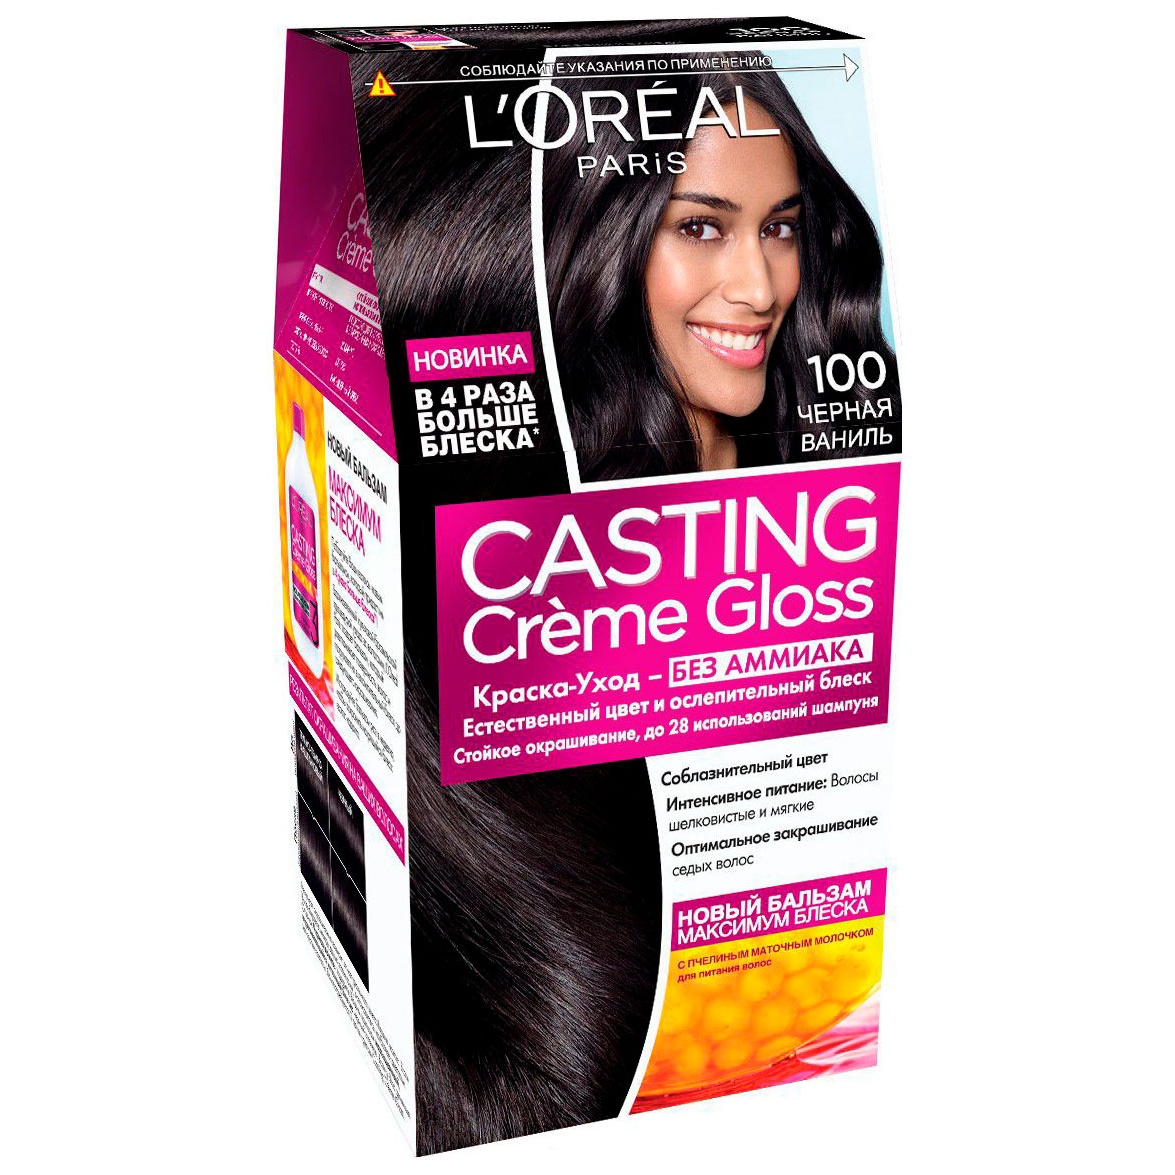 Краска-уход для волос L'Oreal Paris Casting Creme Gloss чёрная ваниль, №100, 239 мл - отзывы покупателей на Мегамаркет